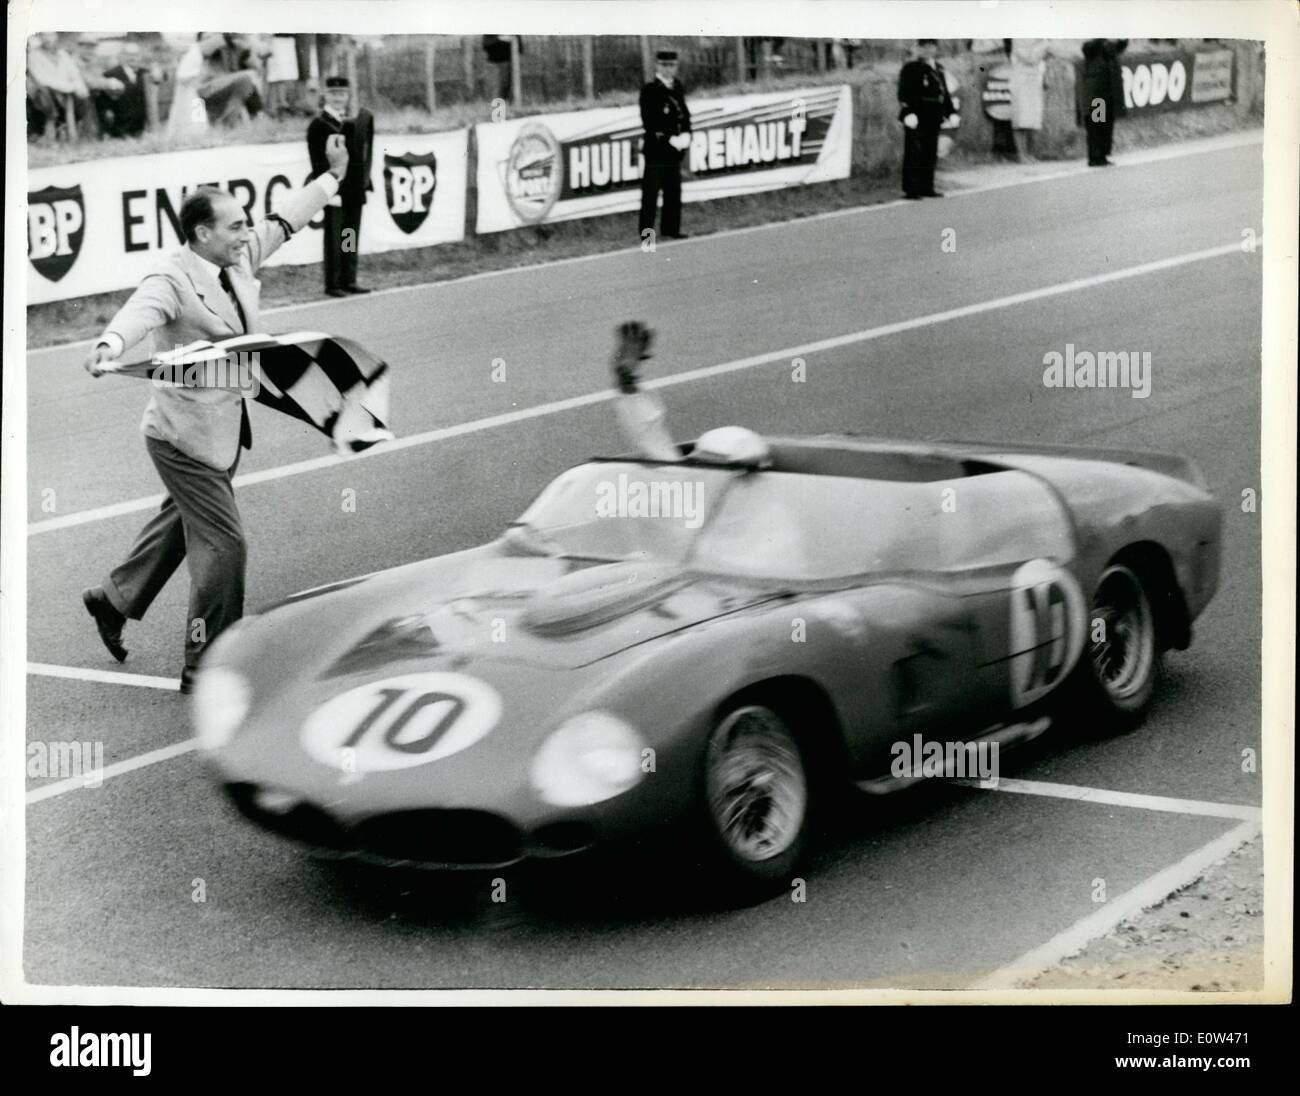 6. Juni 1961 - belgischen und amerikanische Stars gewinnen Le Mans Grand Prix: die Gewinner des Grand Prix von Le Mans 1961 wurden die belgischen Ace Oliver Gendebien und Amerikas Phil Hill. in ihrer italienischen Ferrari. Sie bedeckt 2.780 Meilen in 24 Stunden bei einer Durchschnittsgeschwindigkeit von 115,9 mph. schlagen den 113 Meilen p.h. Datensatz Ron Flockhart und der späten Ivor Bueb 1957 eingerichtet. Das Foto zeigt Oliver Gendebien mit seinem Ferrari über die Linie, die 1961 Le Mans Grand Prix zu gewinnen. Stockfoto